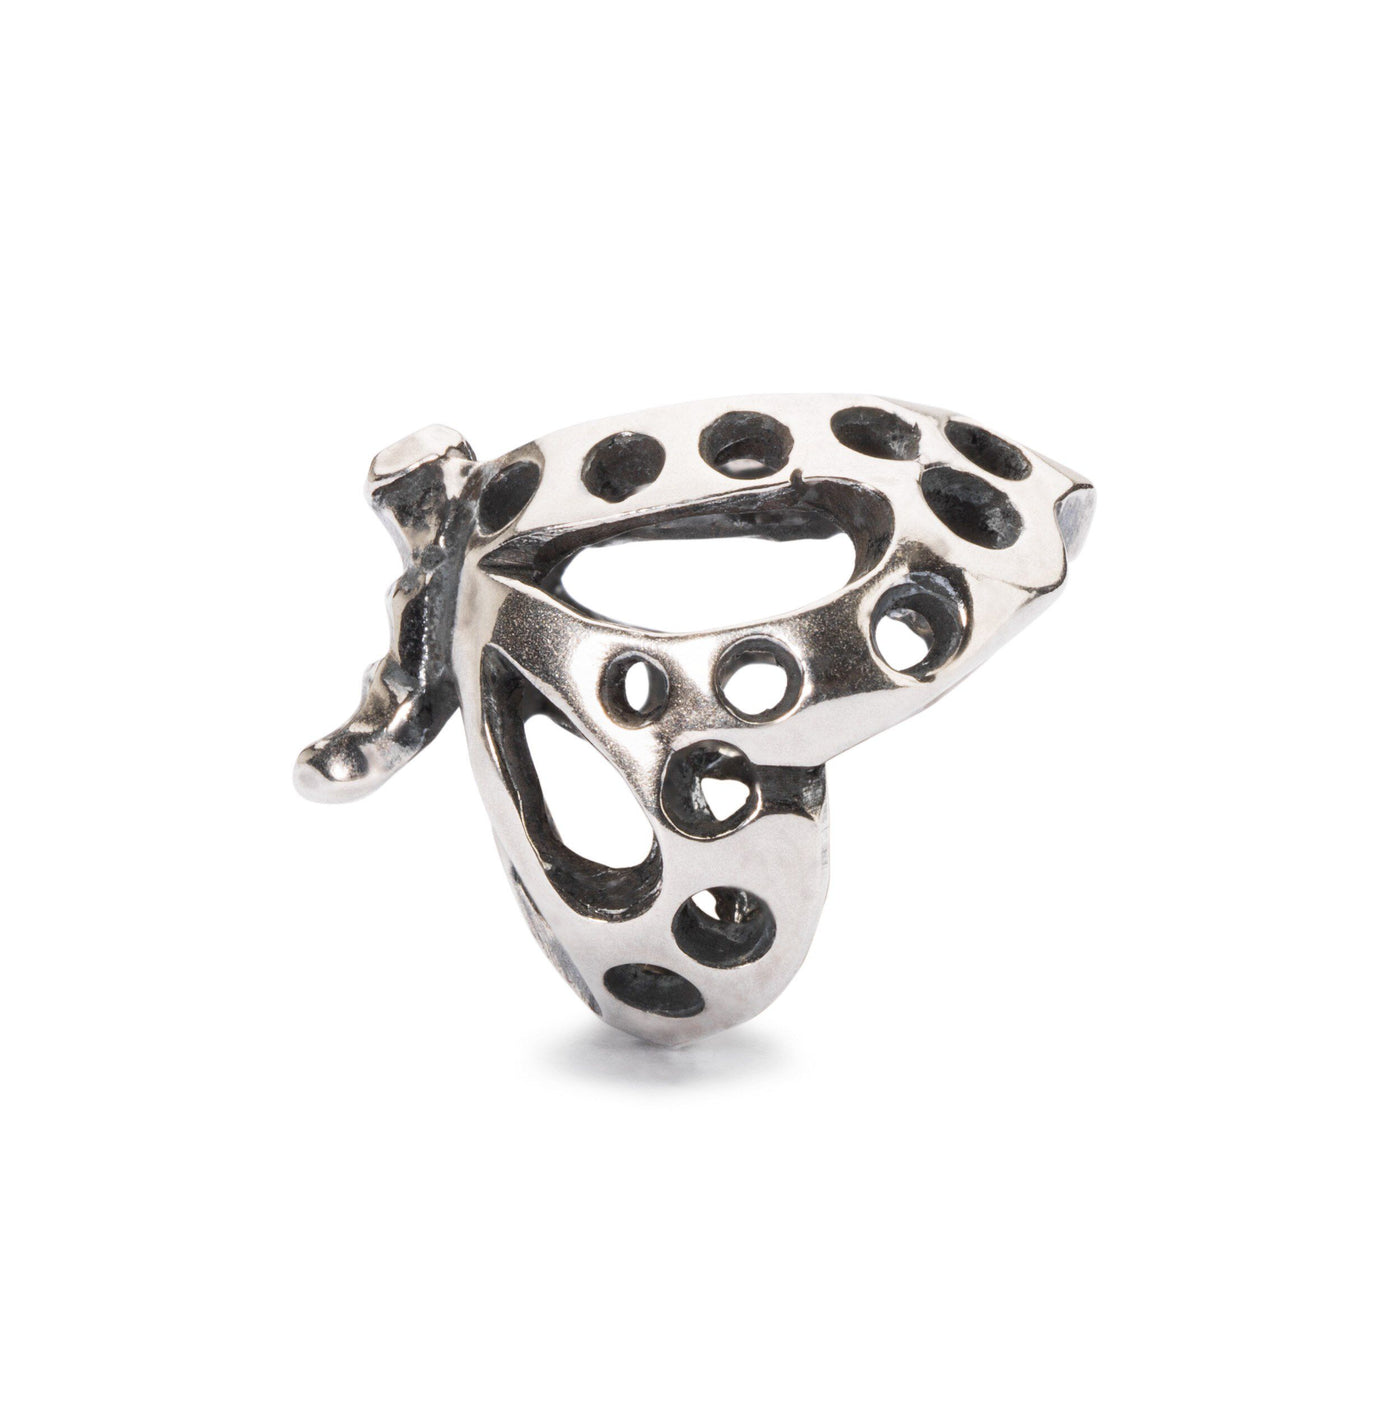 Dancing butterfly jewellery bead in silver.